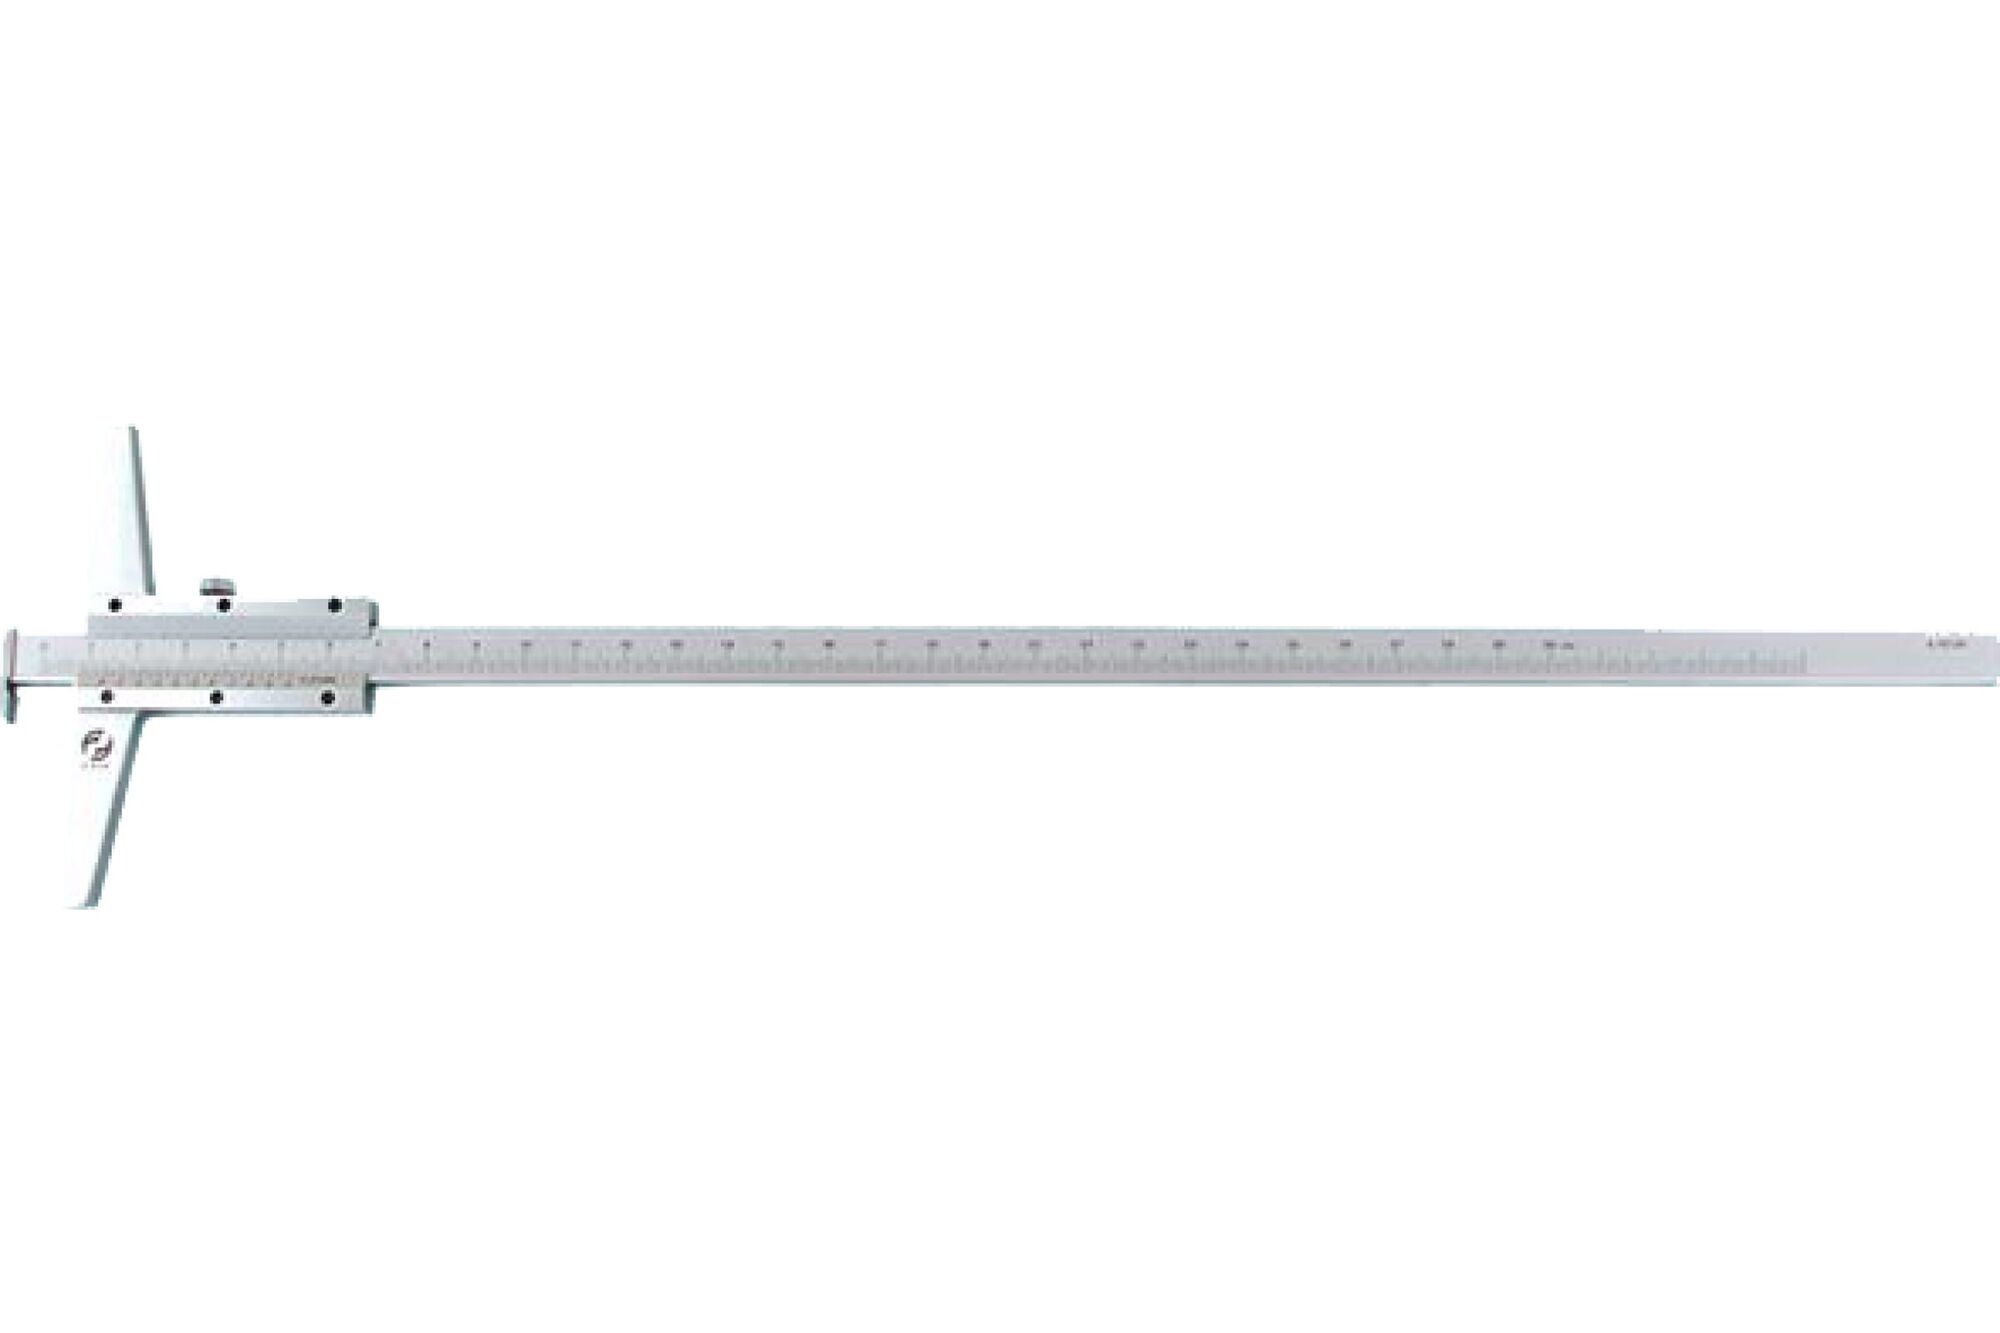 Штангенглубиномер CNIC 0- 150 мм ШГ-150, цена деления 0.05 с зацепом толщином. 213-520S 23447